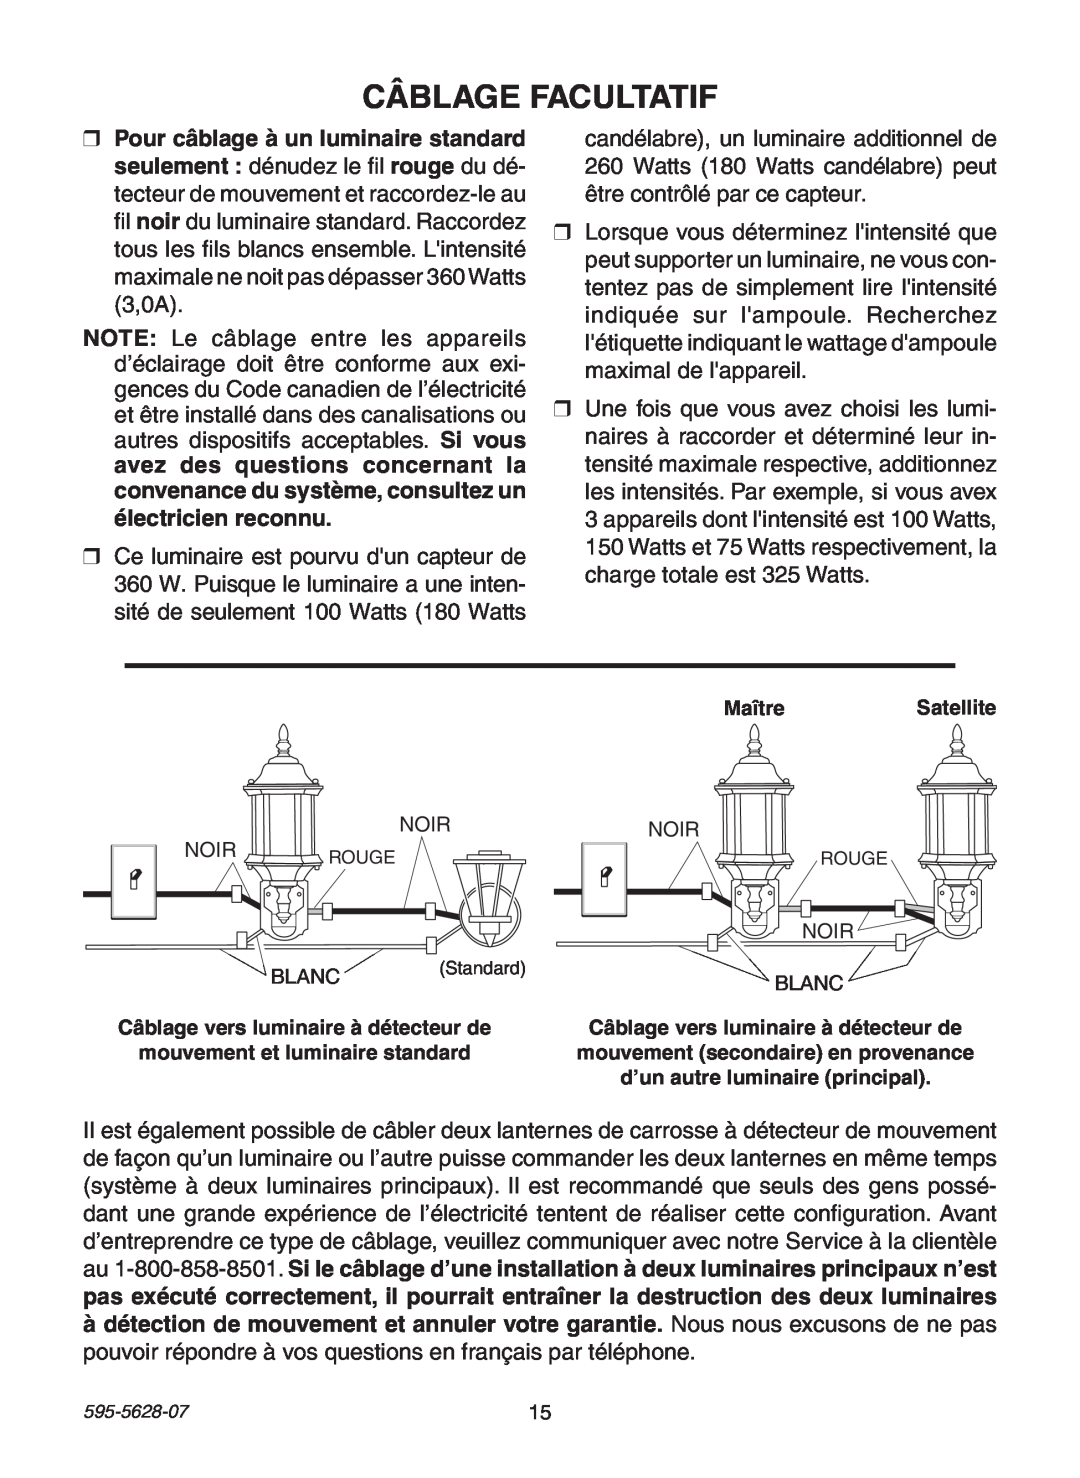 Heath Zenith SL-4190 manual Câblage Facultatif, électricien reconnu 